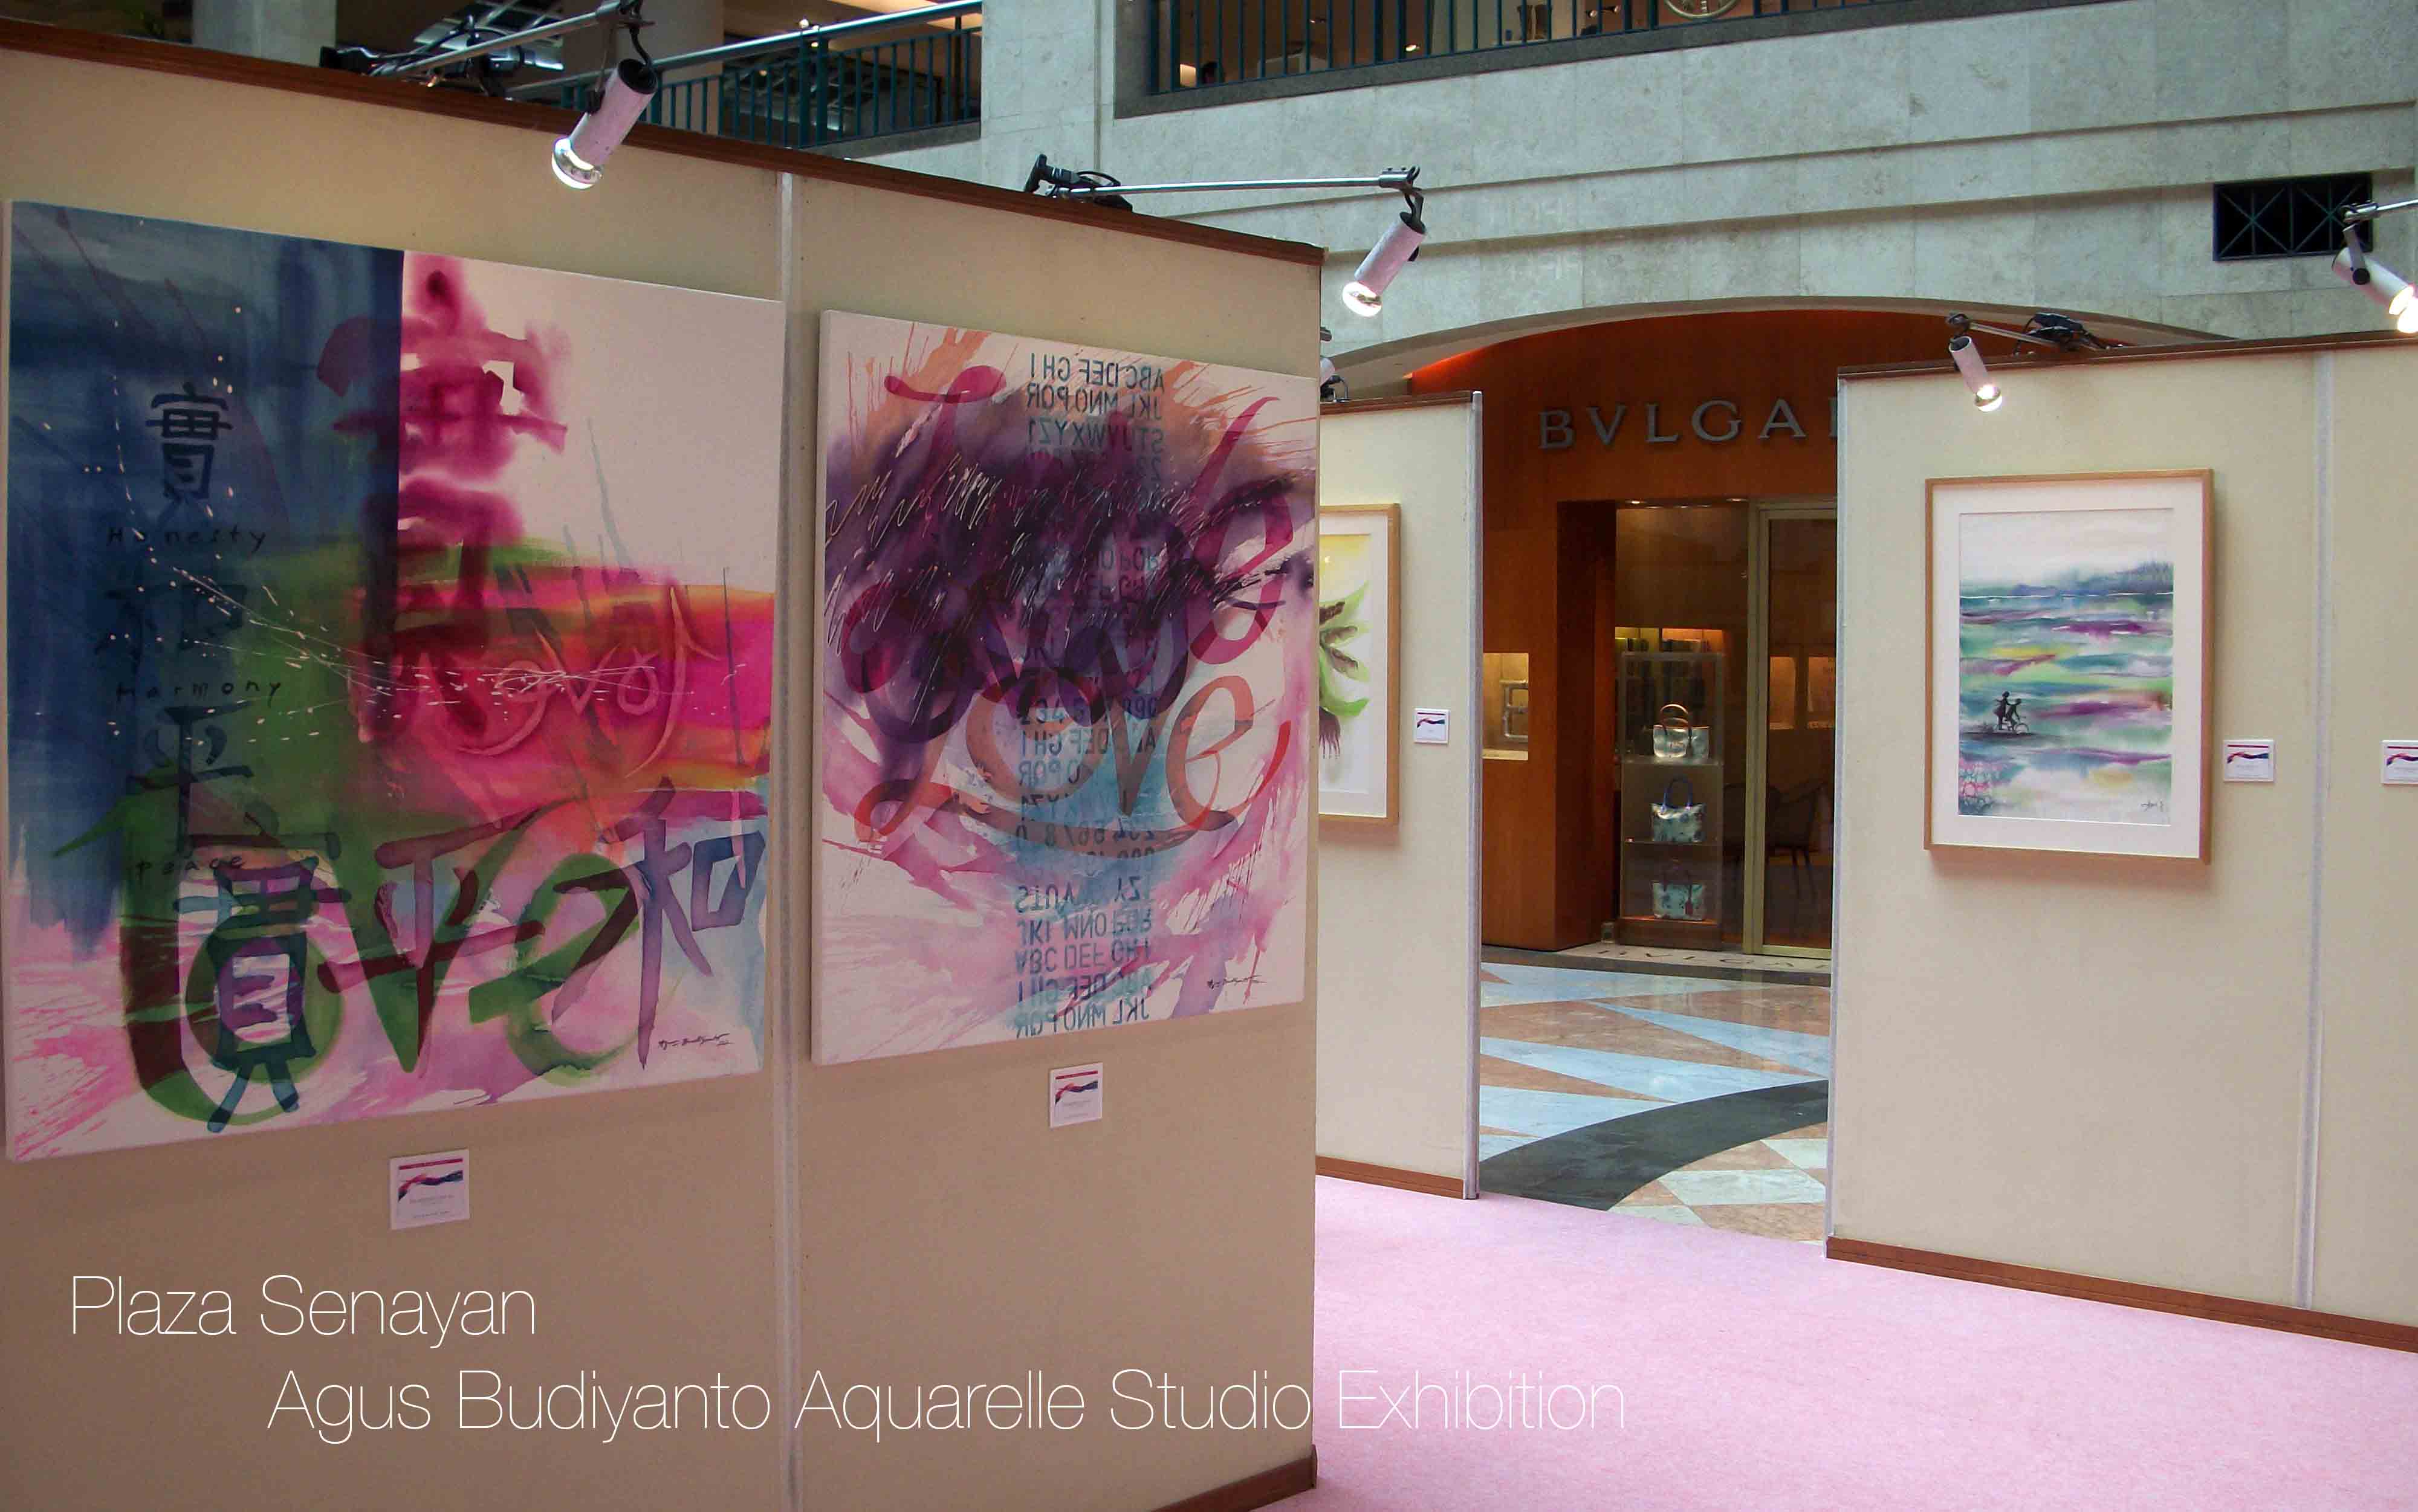 Agus Budiyanto Aquerelle Studio Exhibition at Plaza Senayan